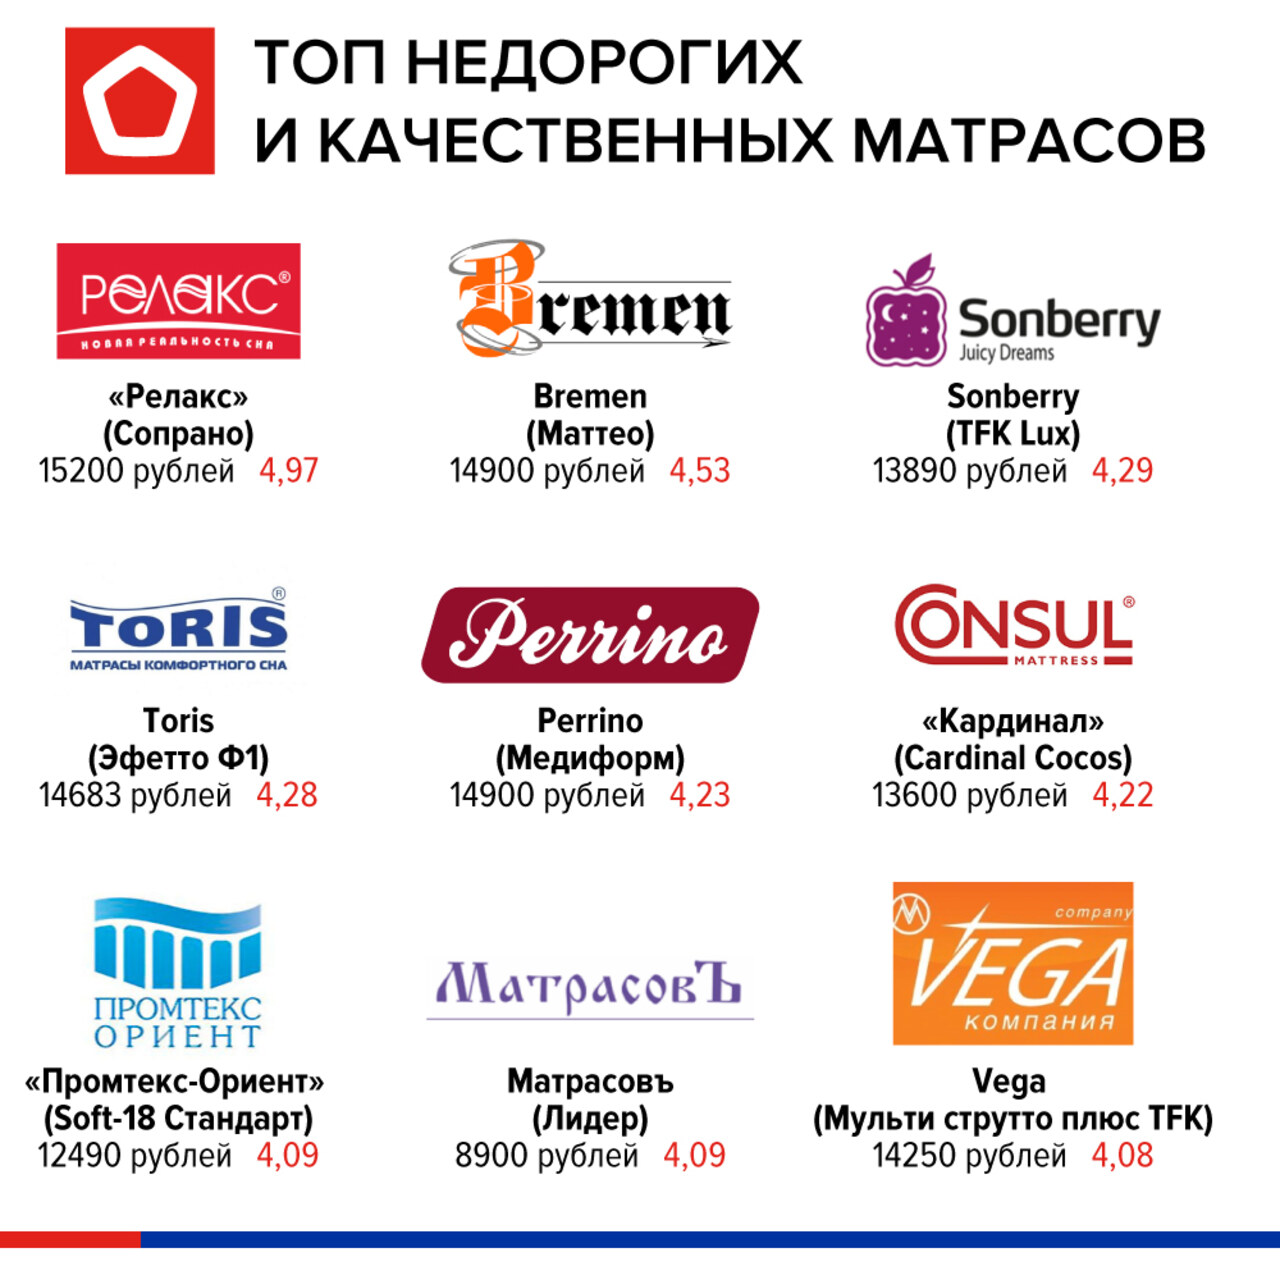 Популярные магазины в России